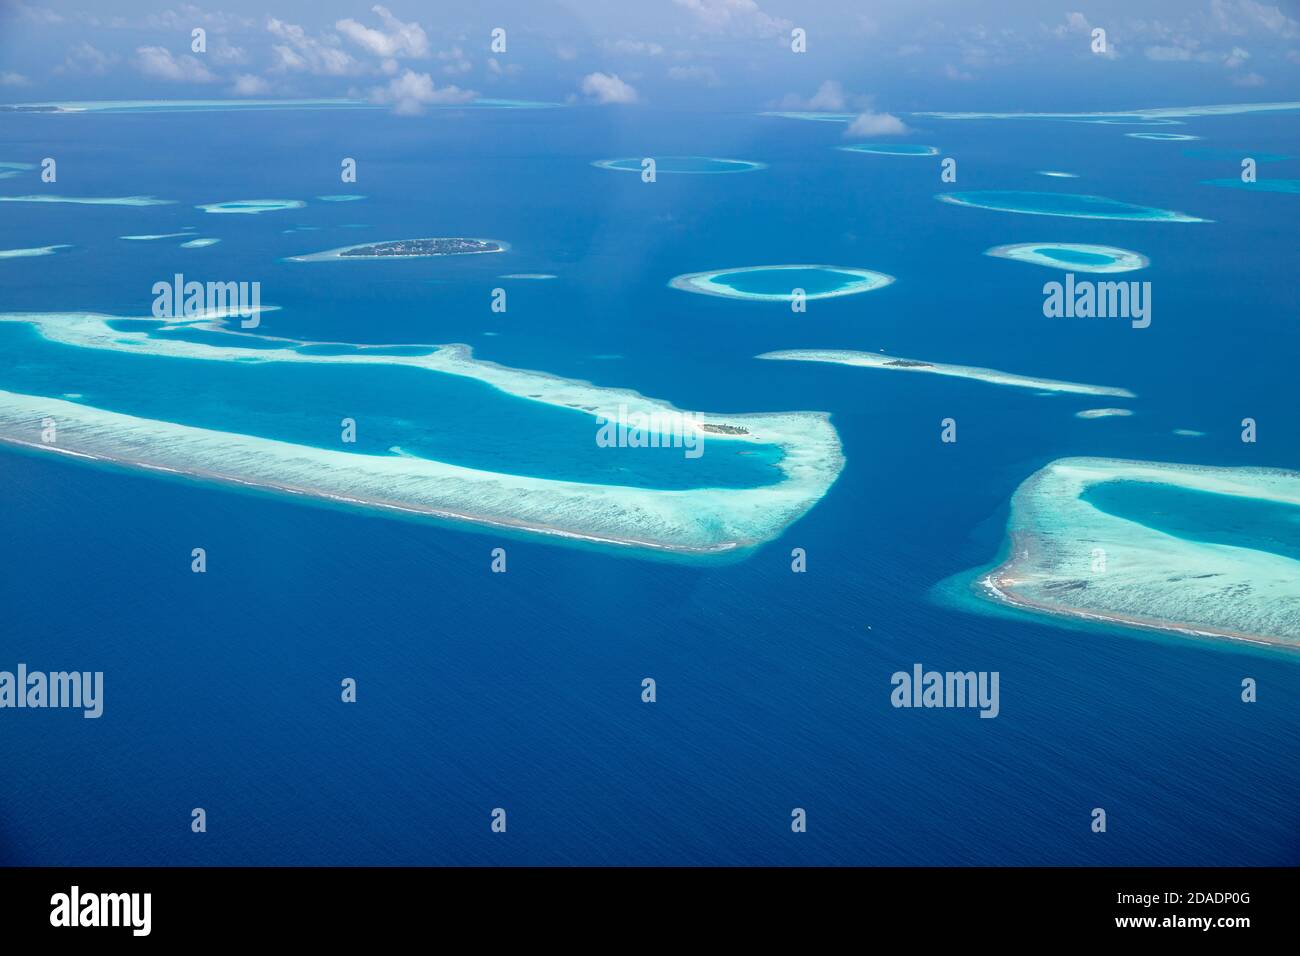 Belle île tropicale. Vue aérienne sur les îles tropicales, drone, vue en avion depuis l'atoll du récif corallien dans les îles Maldives. Voyage exotique destination nature Banque D'Images